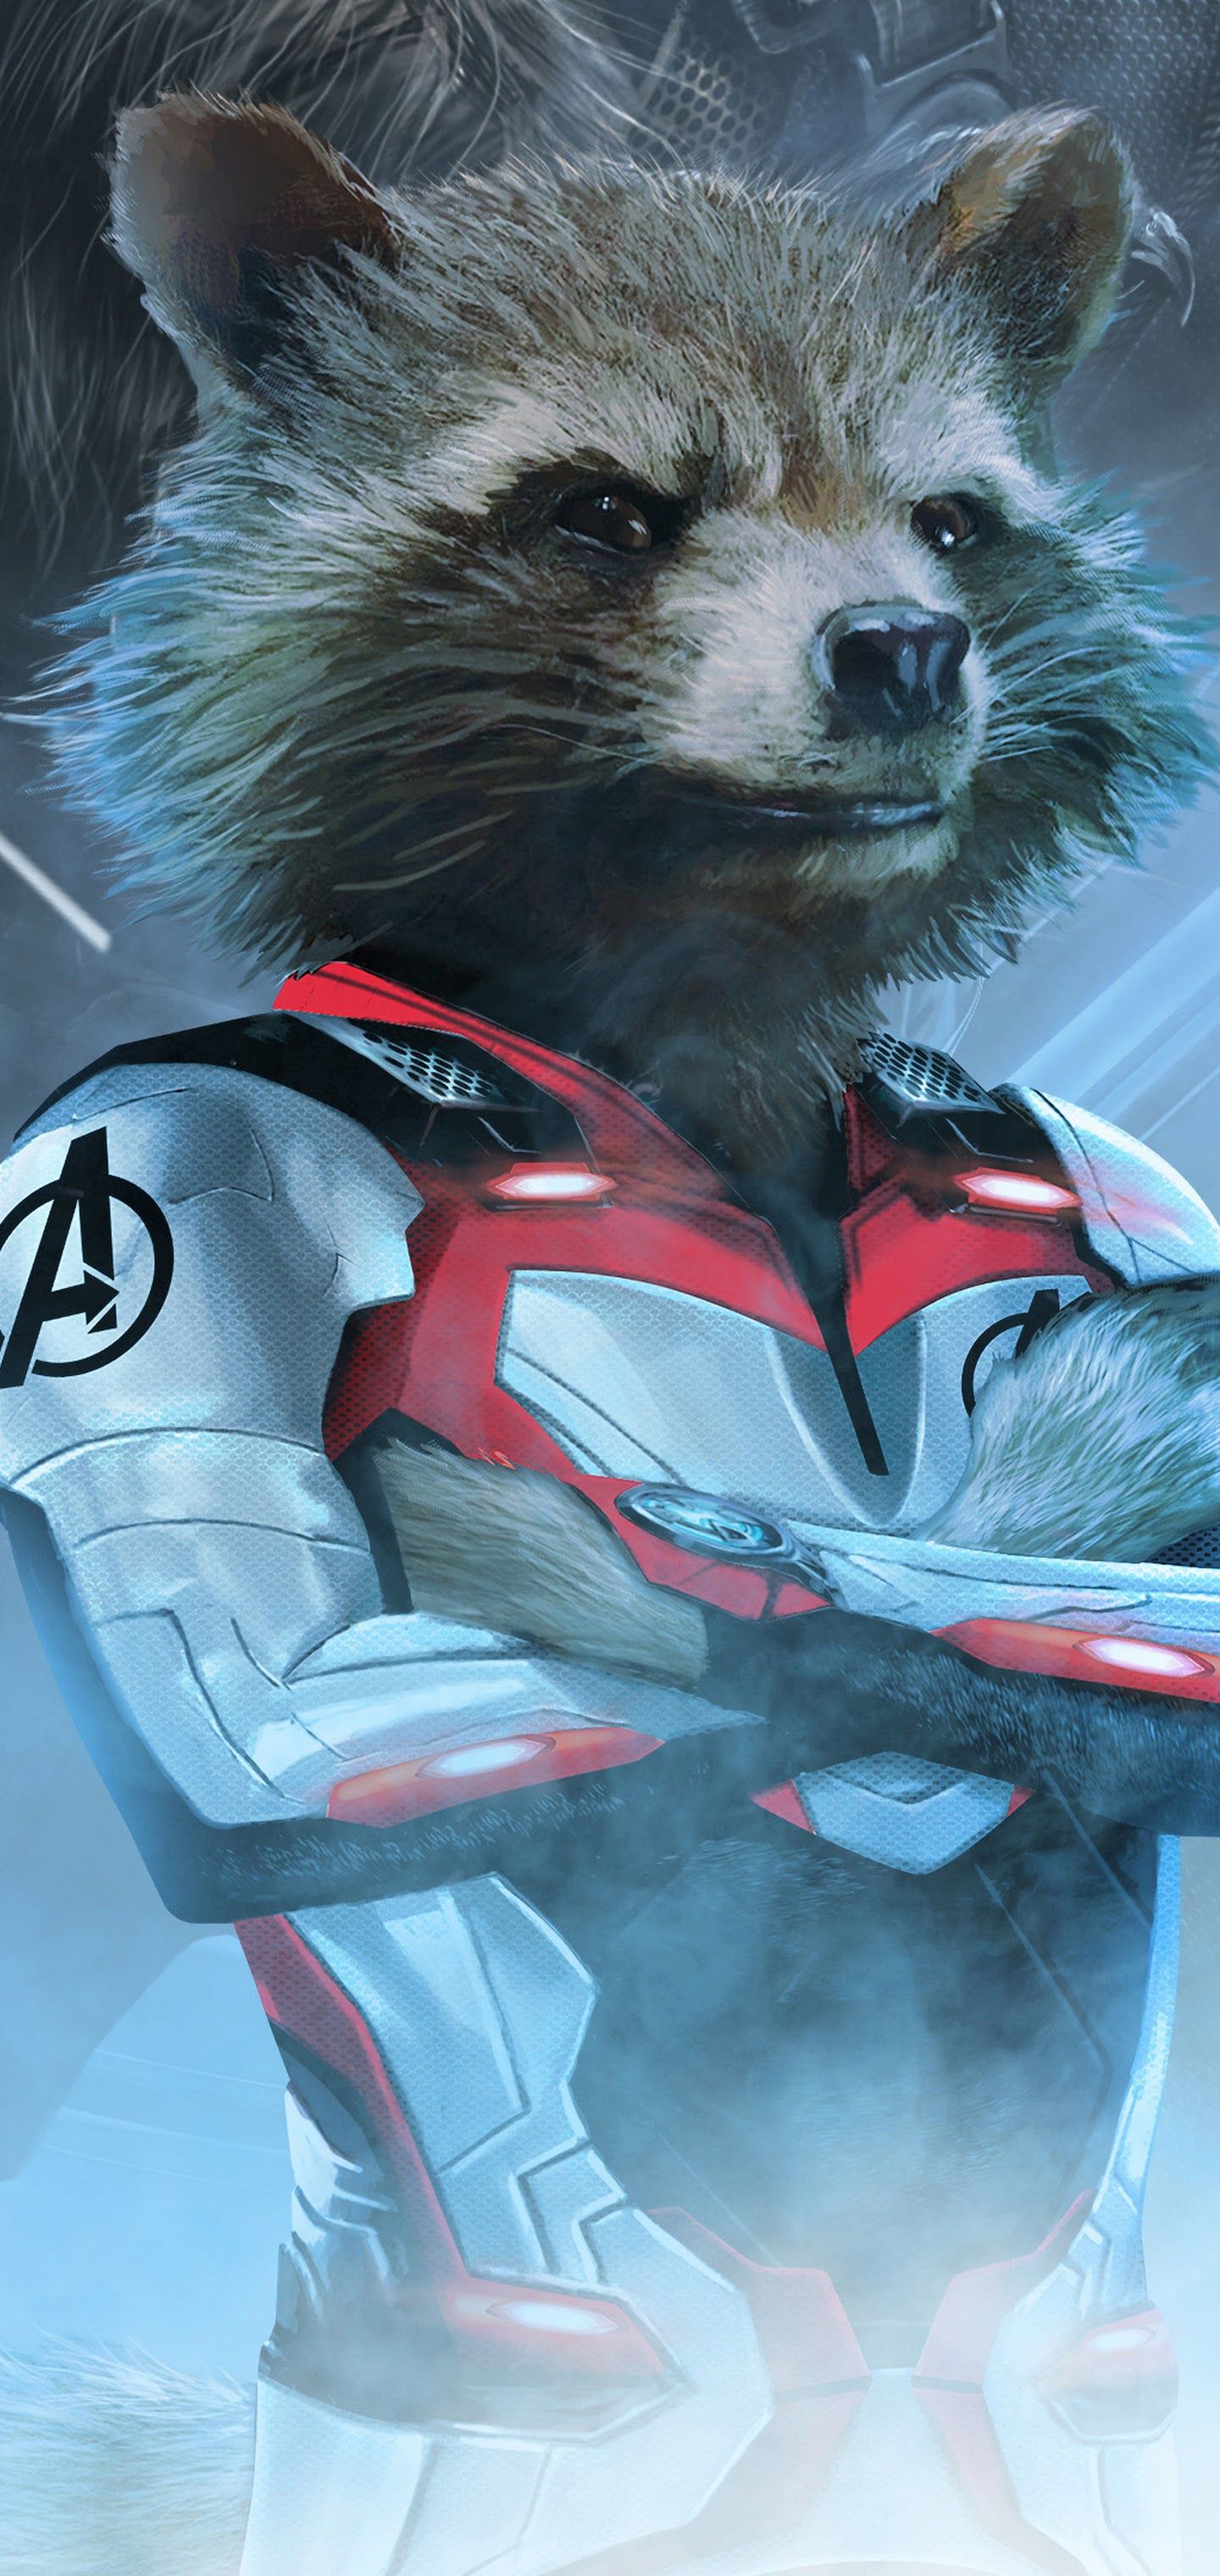 Avengers: Endgame Rocket Raccoon White Suit 4K Wallpaper